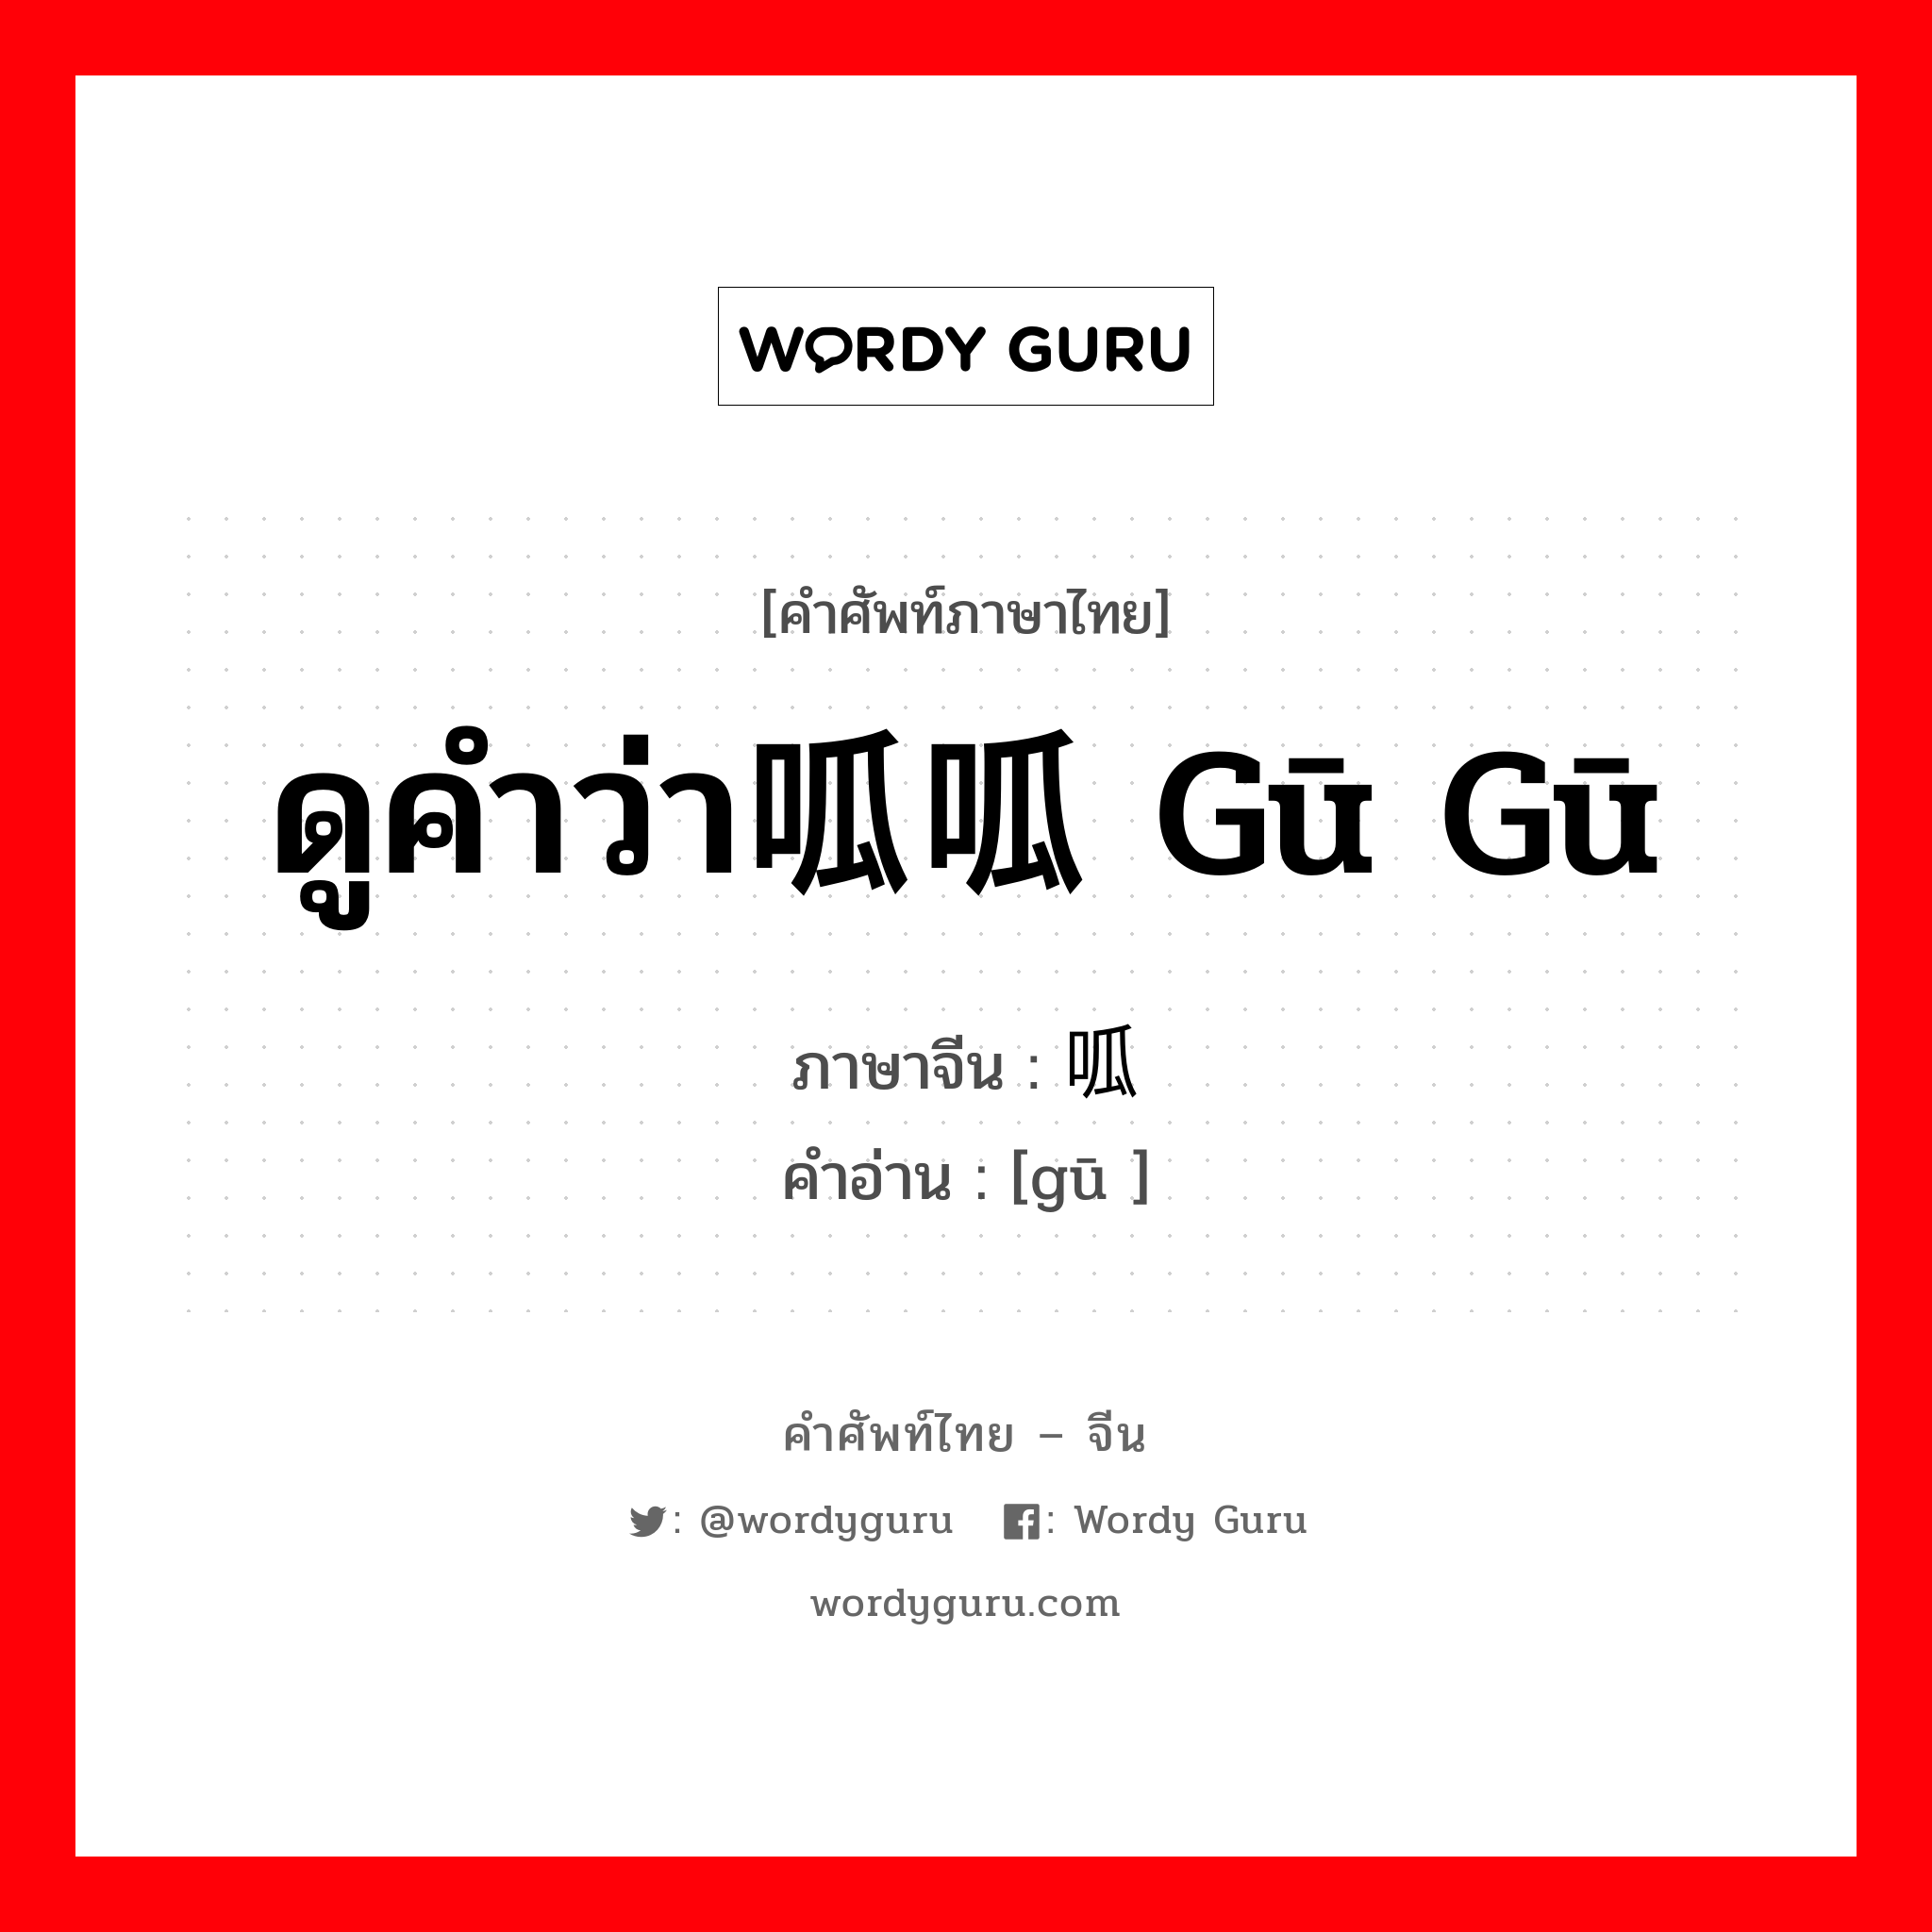 ดูคำว่า呱呱 gū gū ภาษาจีนคืออะไร, คำศัพท์ภาษาไทย - จีน ดูคำว่า呱呱 gū gū ภาษาจีน 呱 คำอ่าน [gū ]